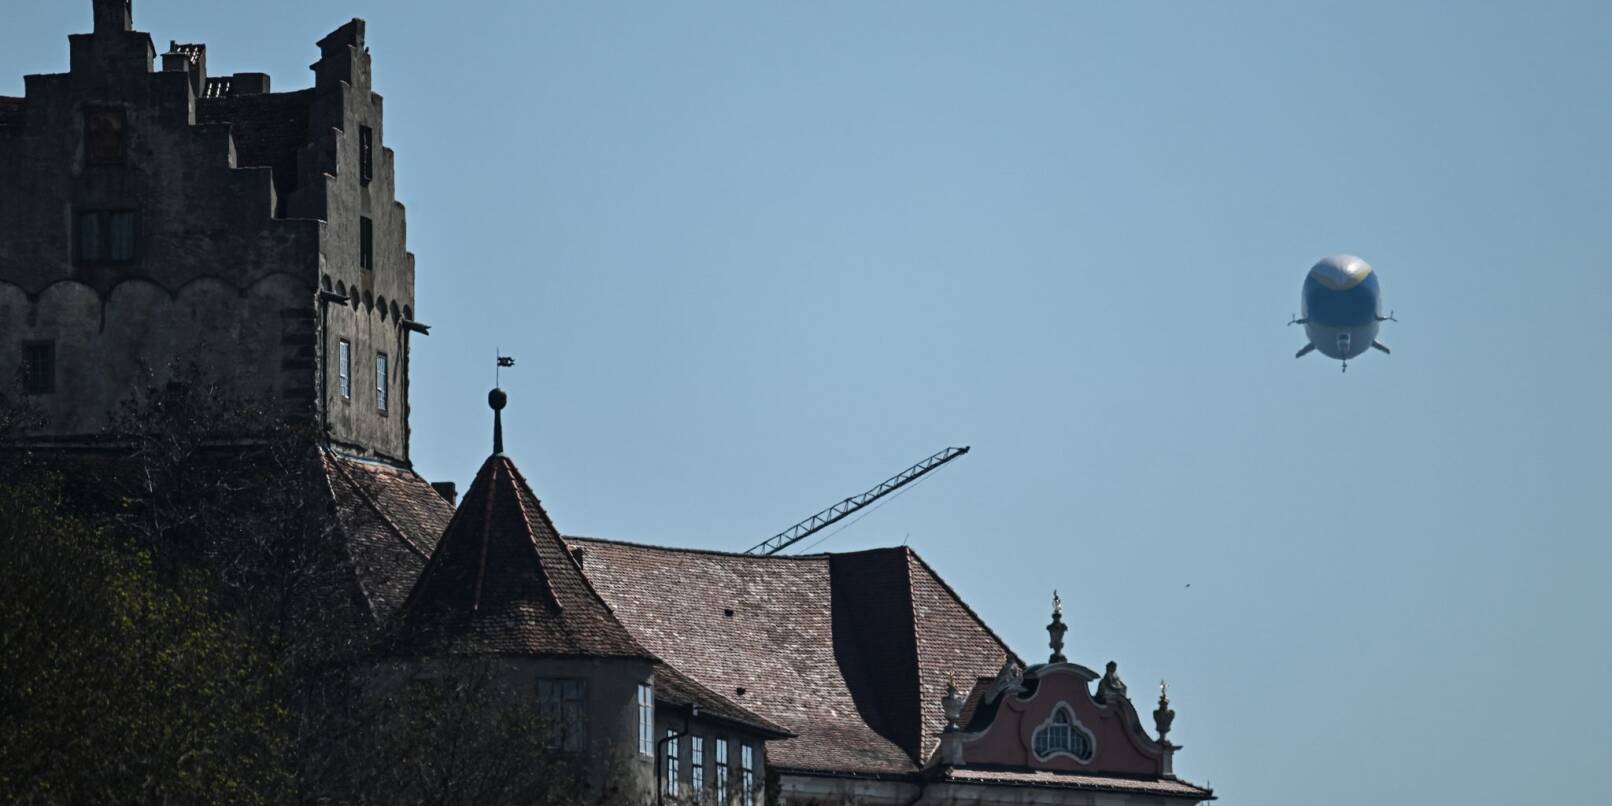 Der Zeppelin NT (Neue Technologie) fliegt an der Burg Meersburg am Bodensee entlang.